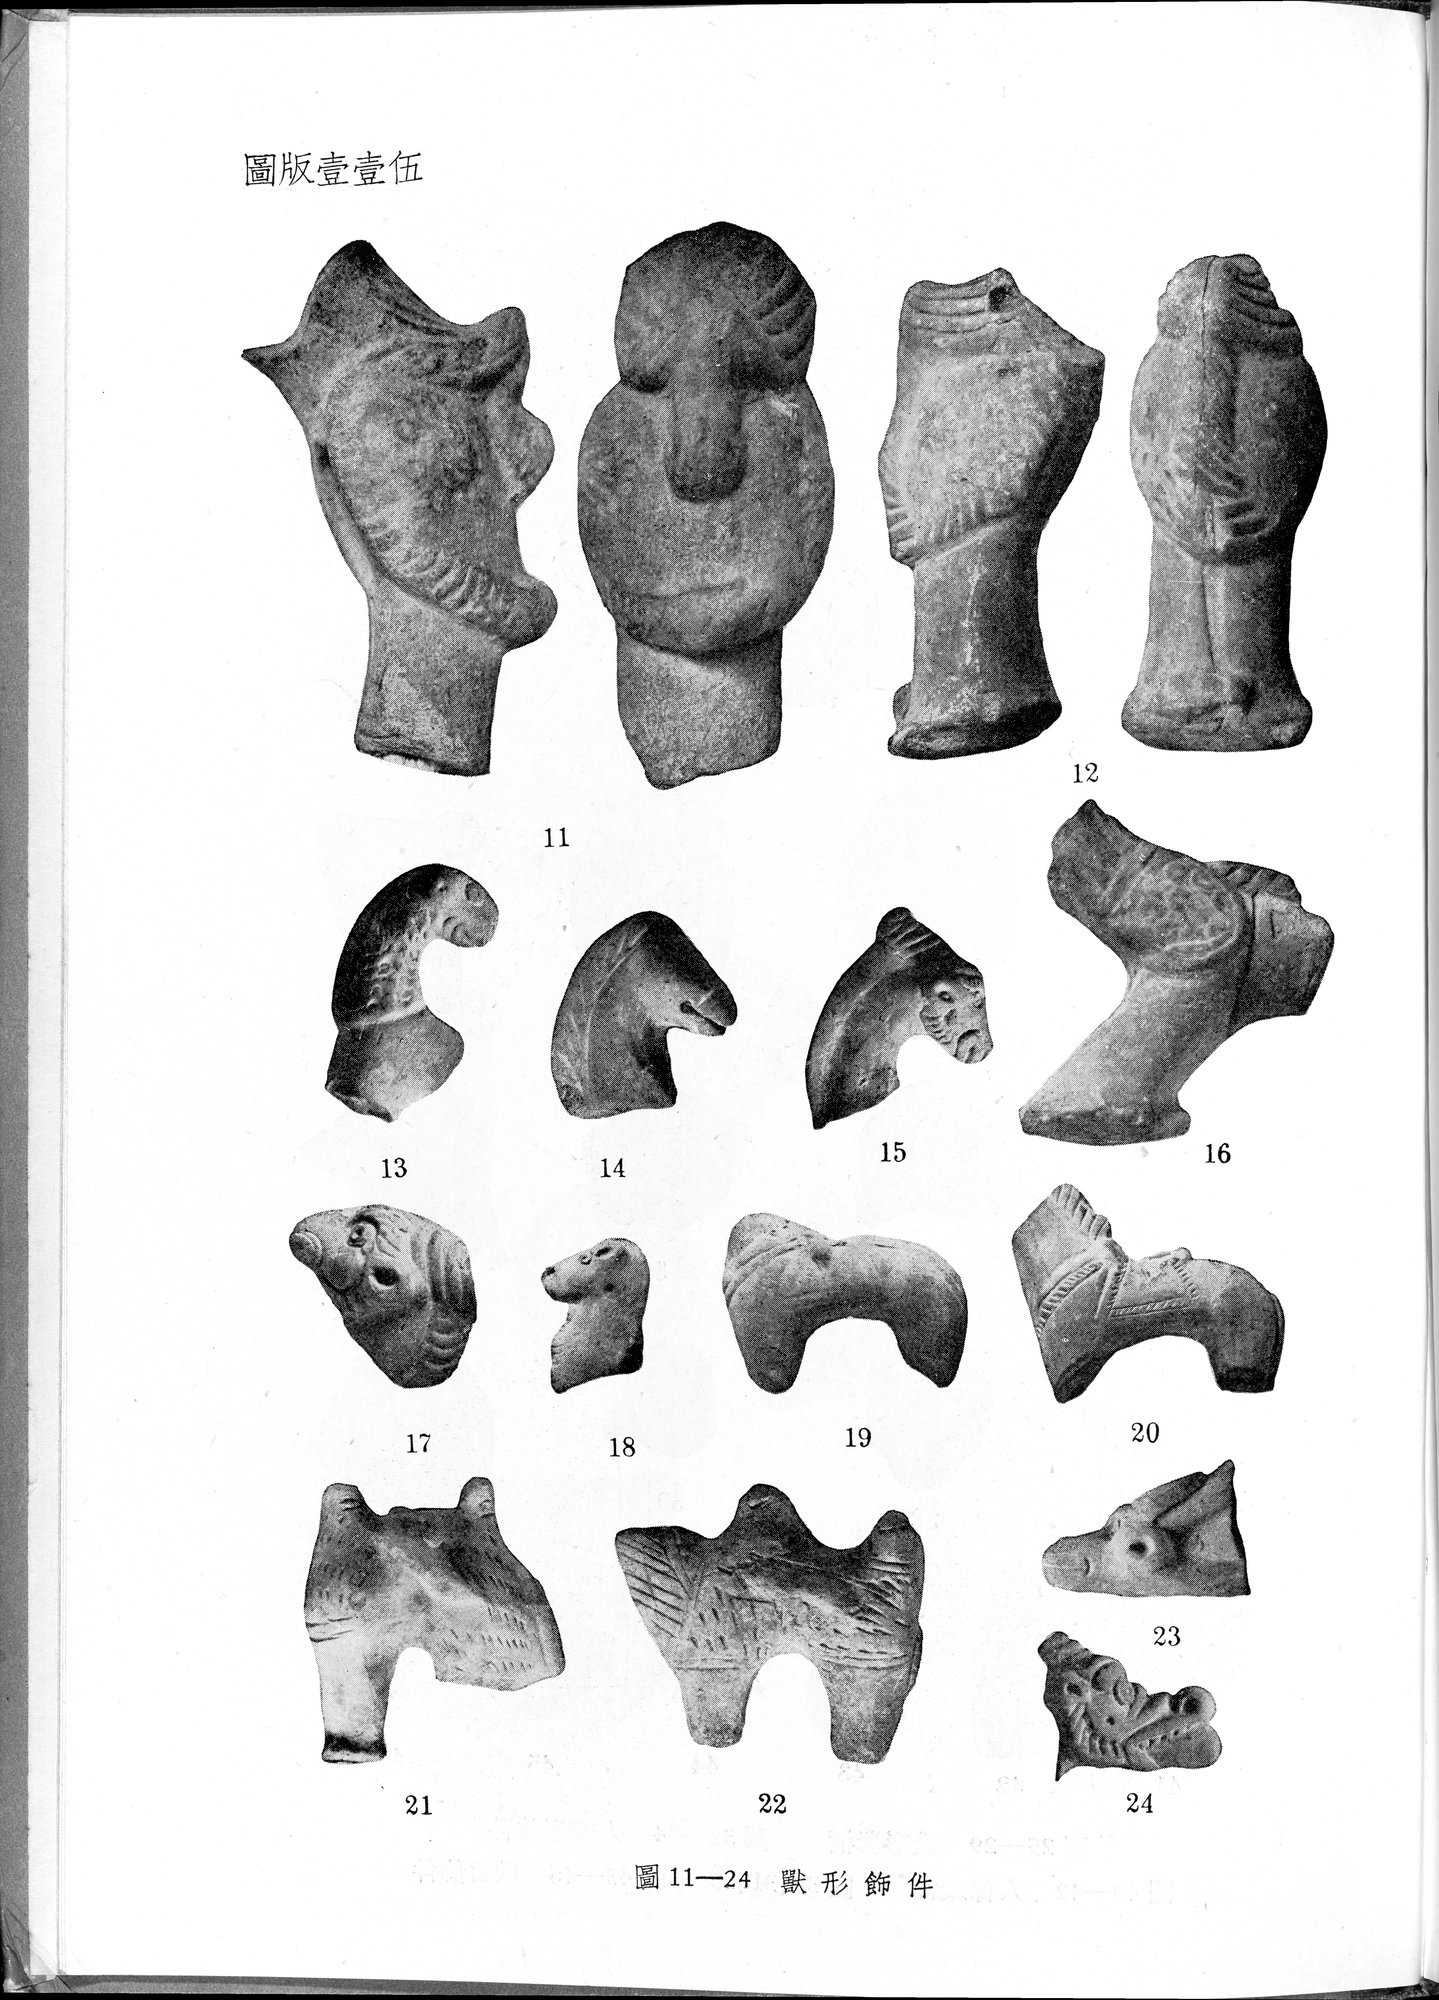 塔里木盆地考古記 : vol.1 / Page 359 (Grayscale High Resolution Image)